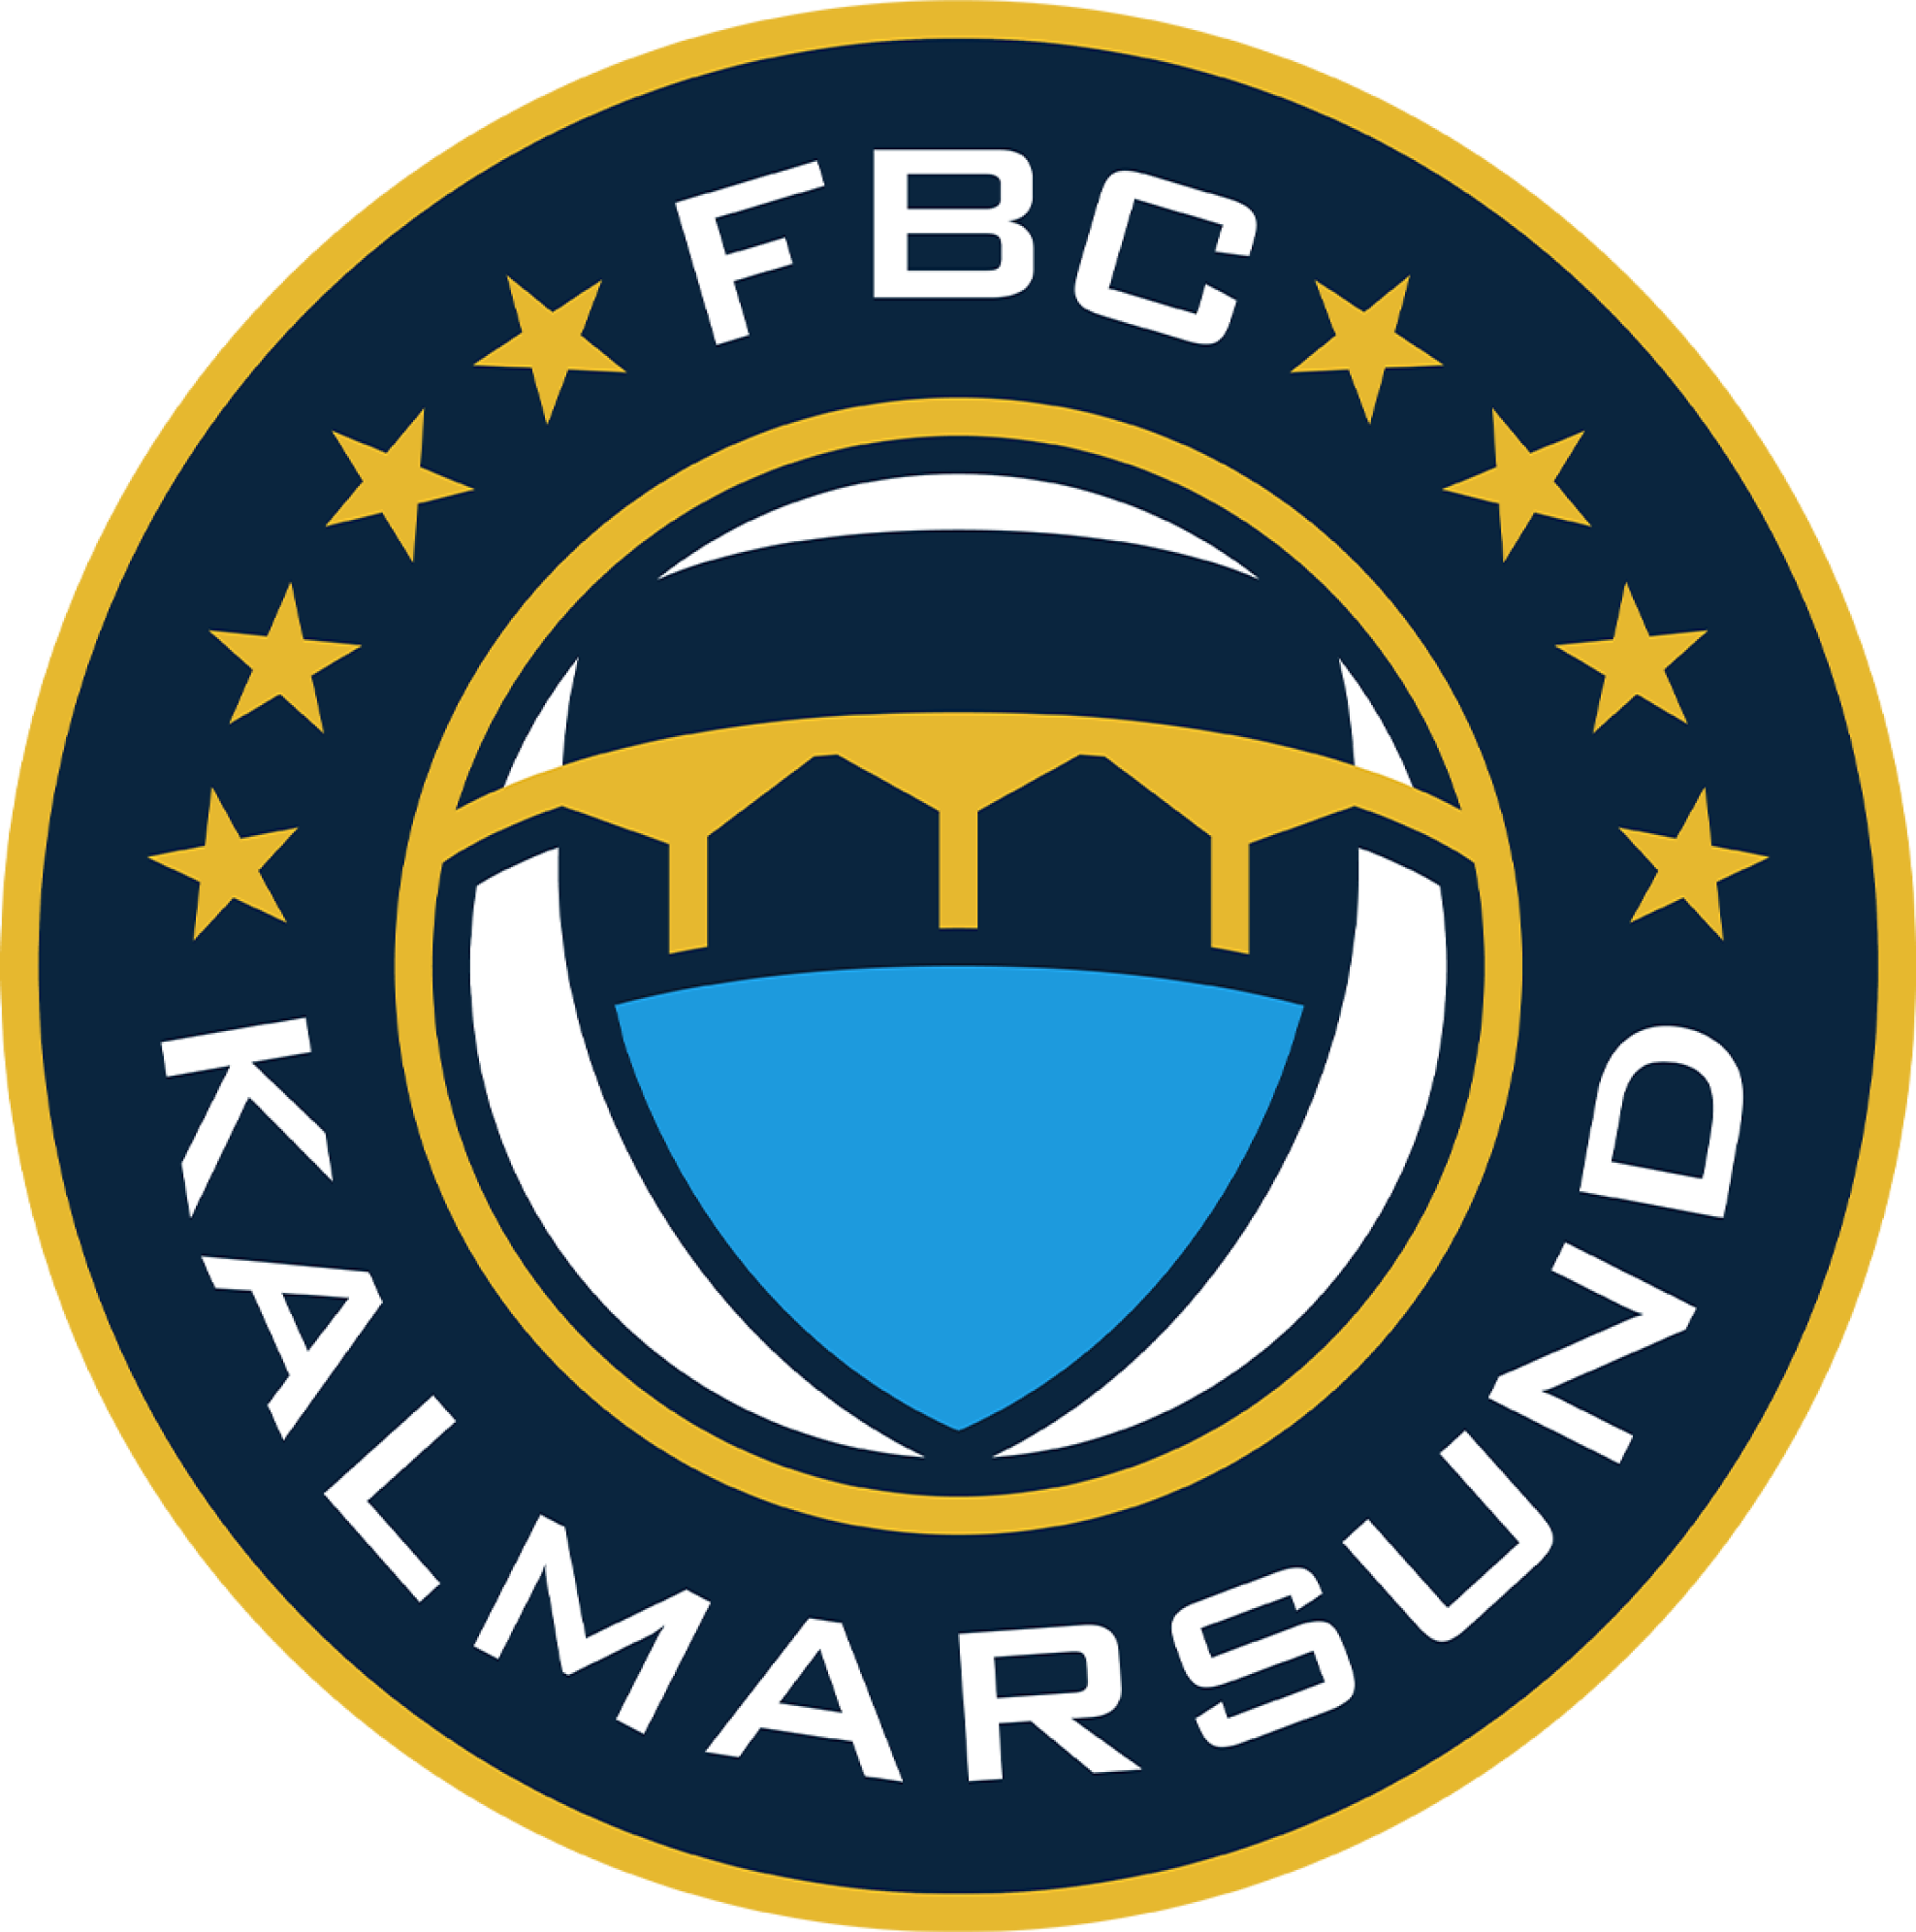 FBC Kalmarsunds emblem